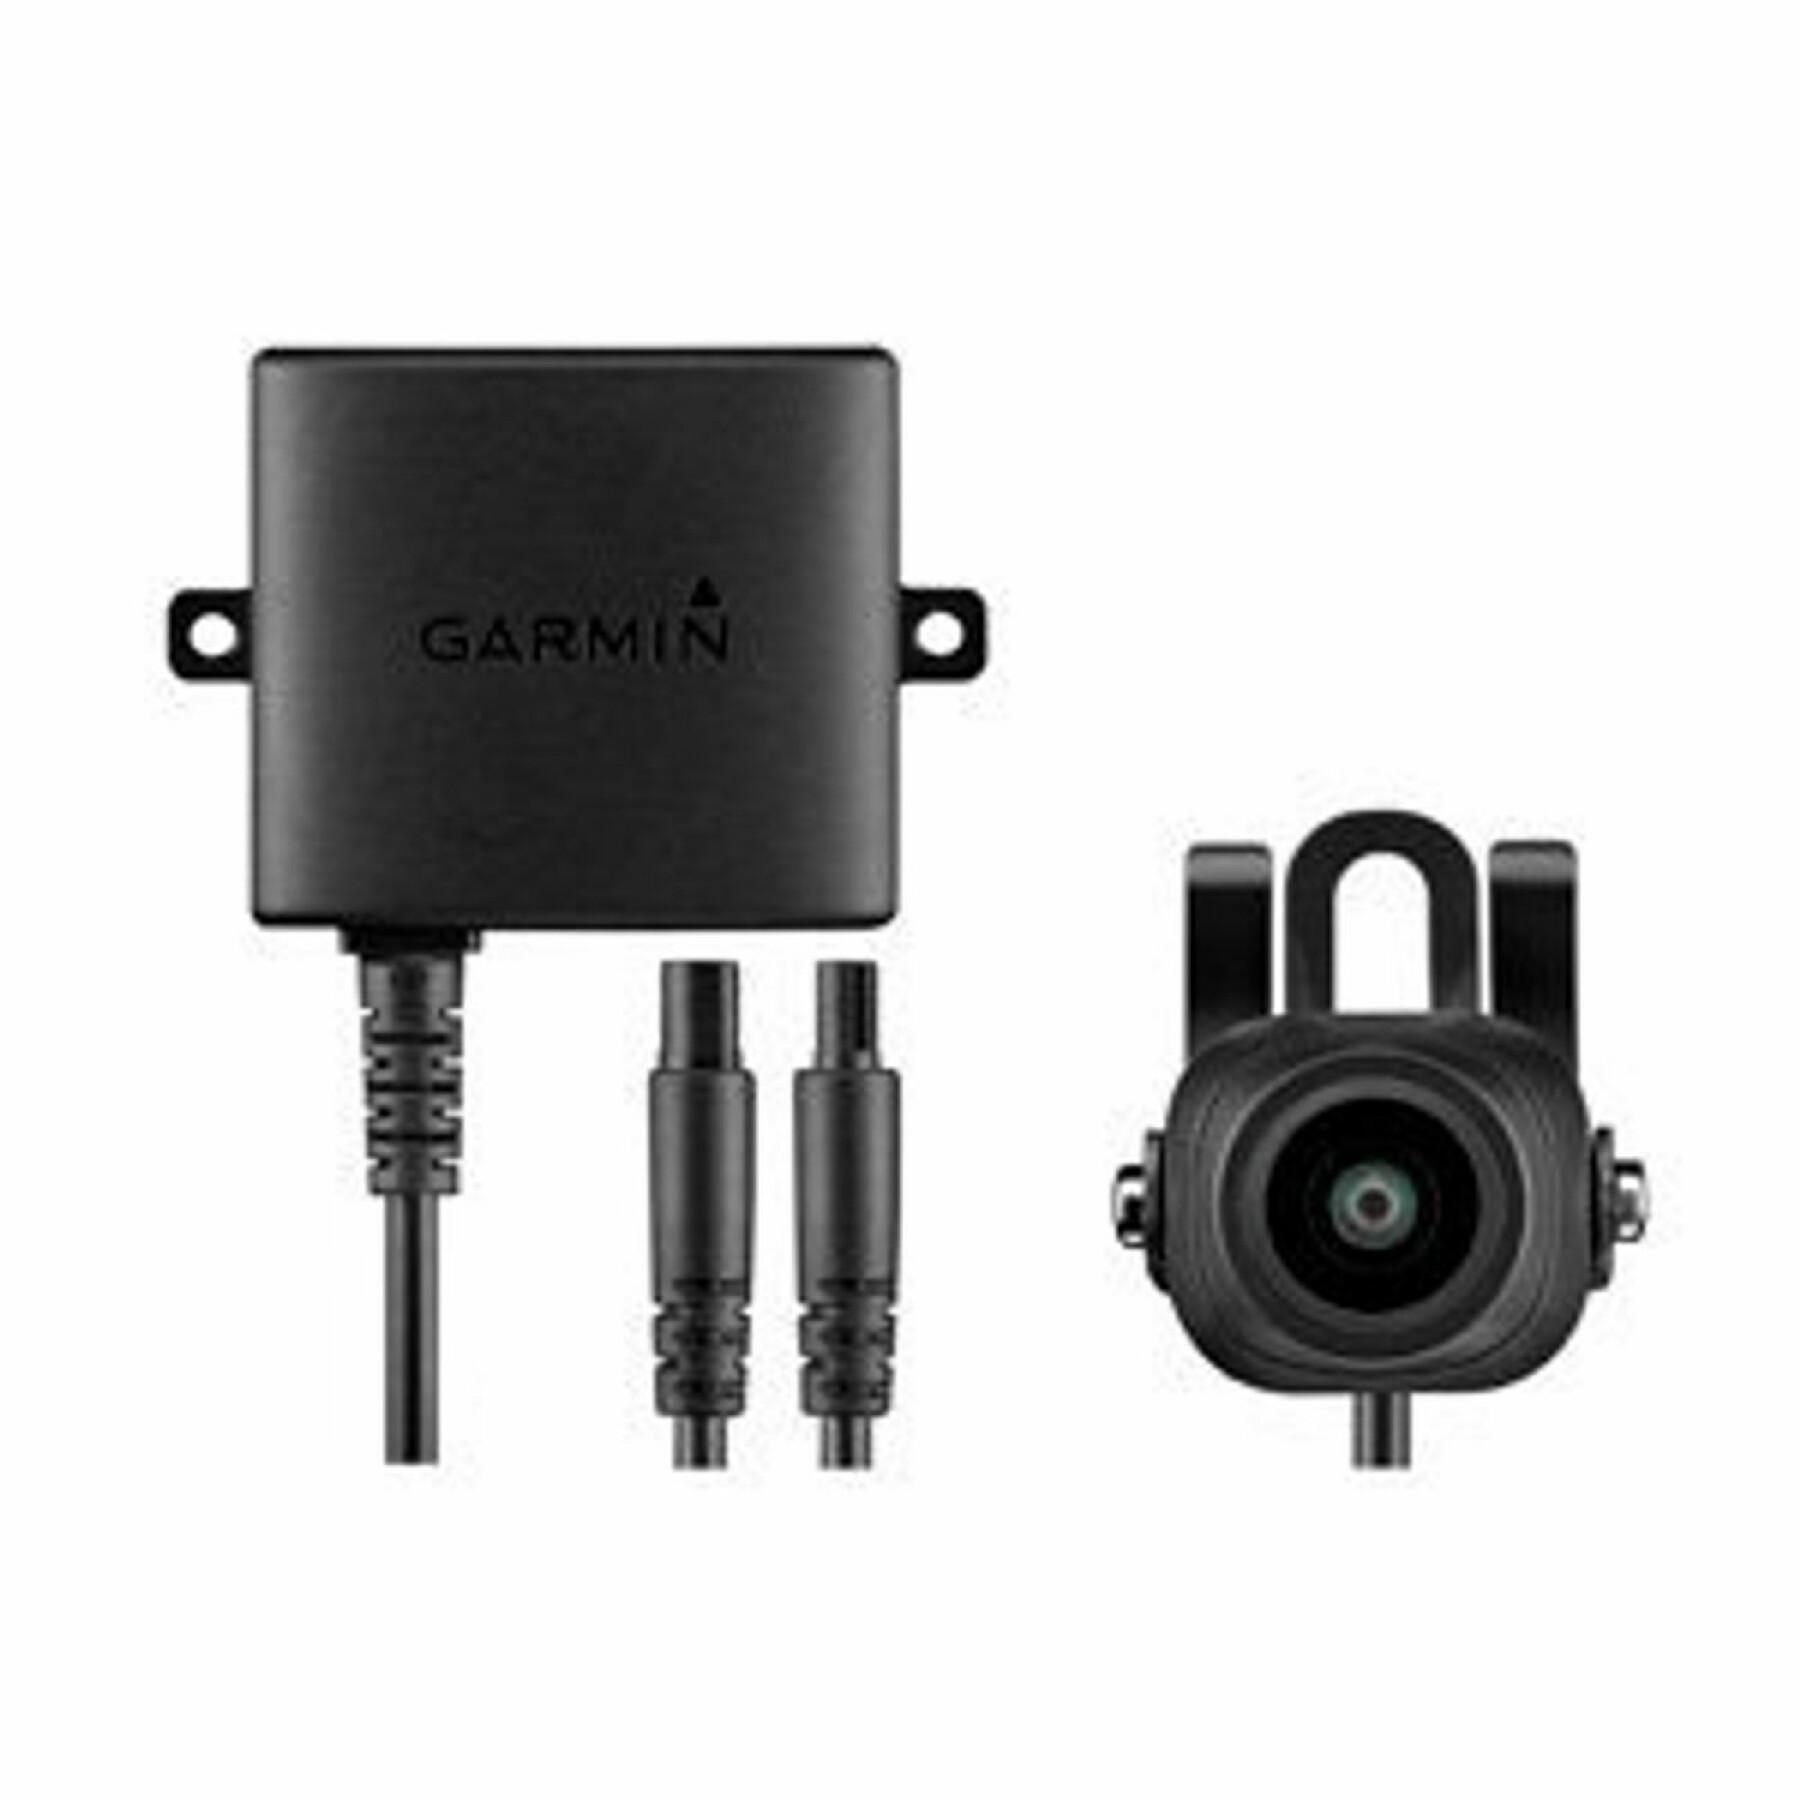 Récepteur Garmin sans fil bc 30 / câble du récepteur info-trafic et câble allume-cigare